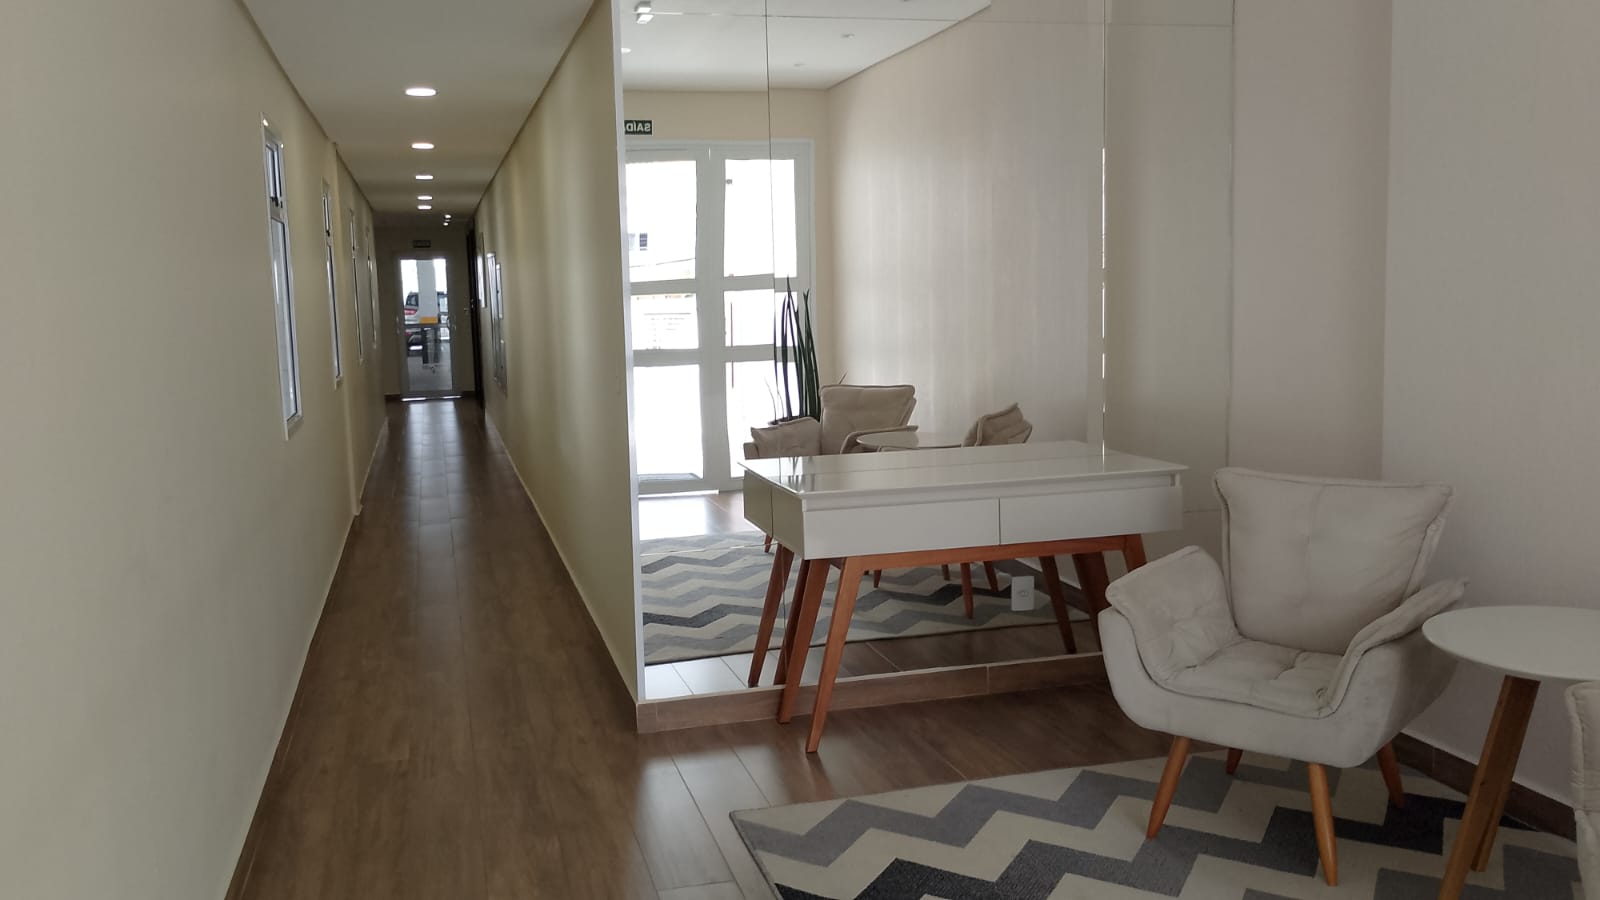 Apartamento novo 0K 1 dormitorio suite ,terraço com churrasqueira ,lazer completo – Campo Grande proximo canal 1 - foto 26